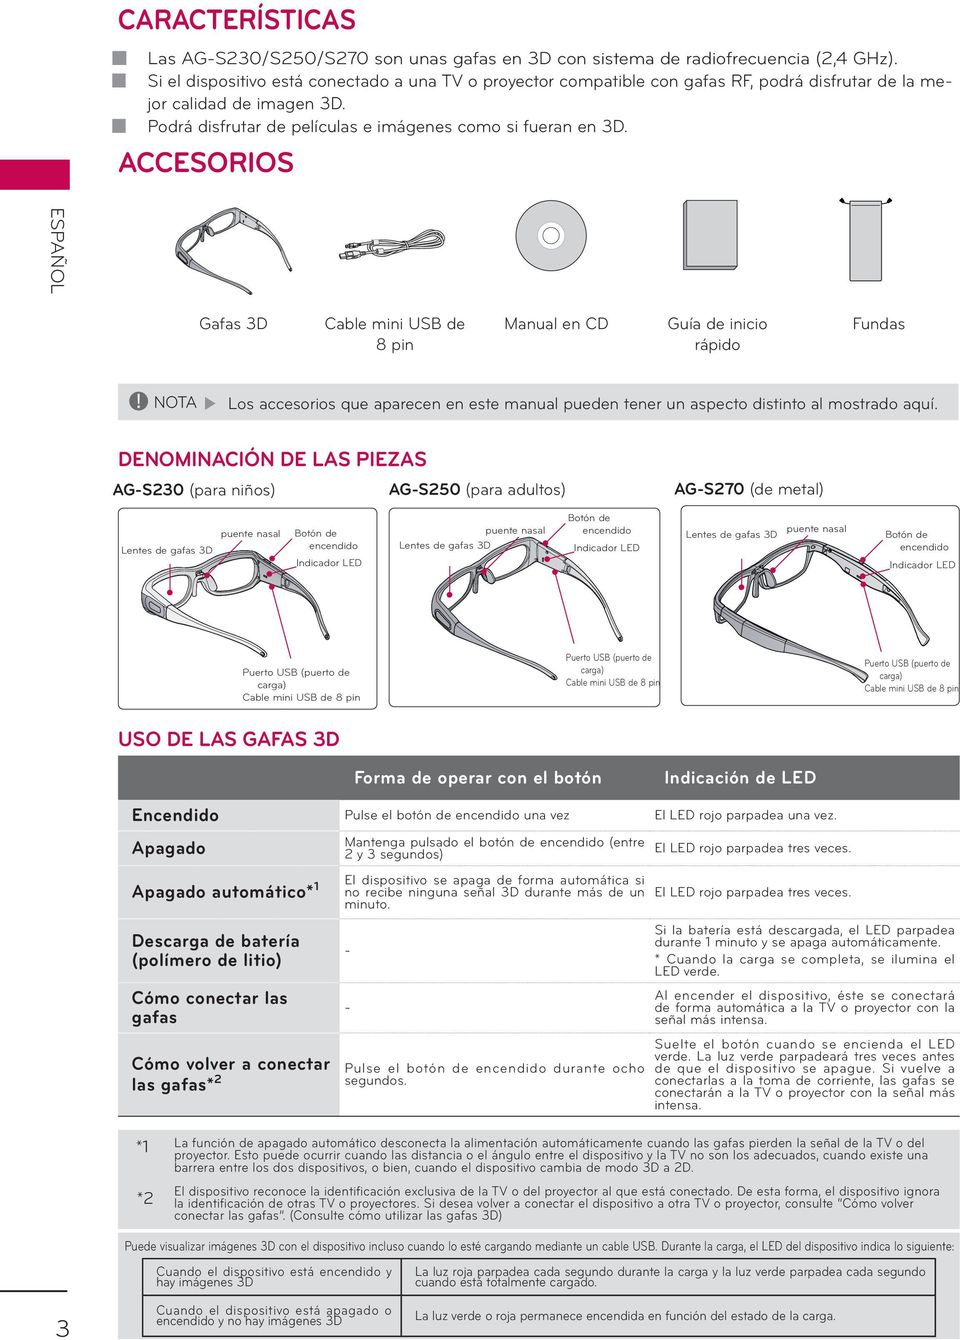 ACCESORIOS ESPAÑOL Gafas 3D Cable mini USB de 8 pin Manual en CD Guía de inicio rápido Fundas! NOTA Los accesorios que aparecen en este manual pueden tener un aspecto distinto al mostrado aquí.